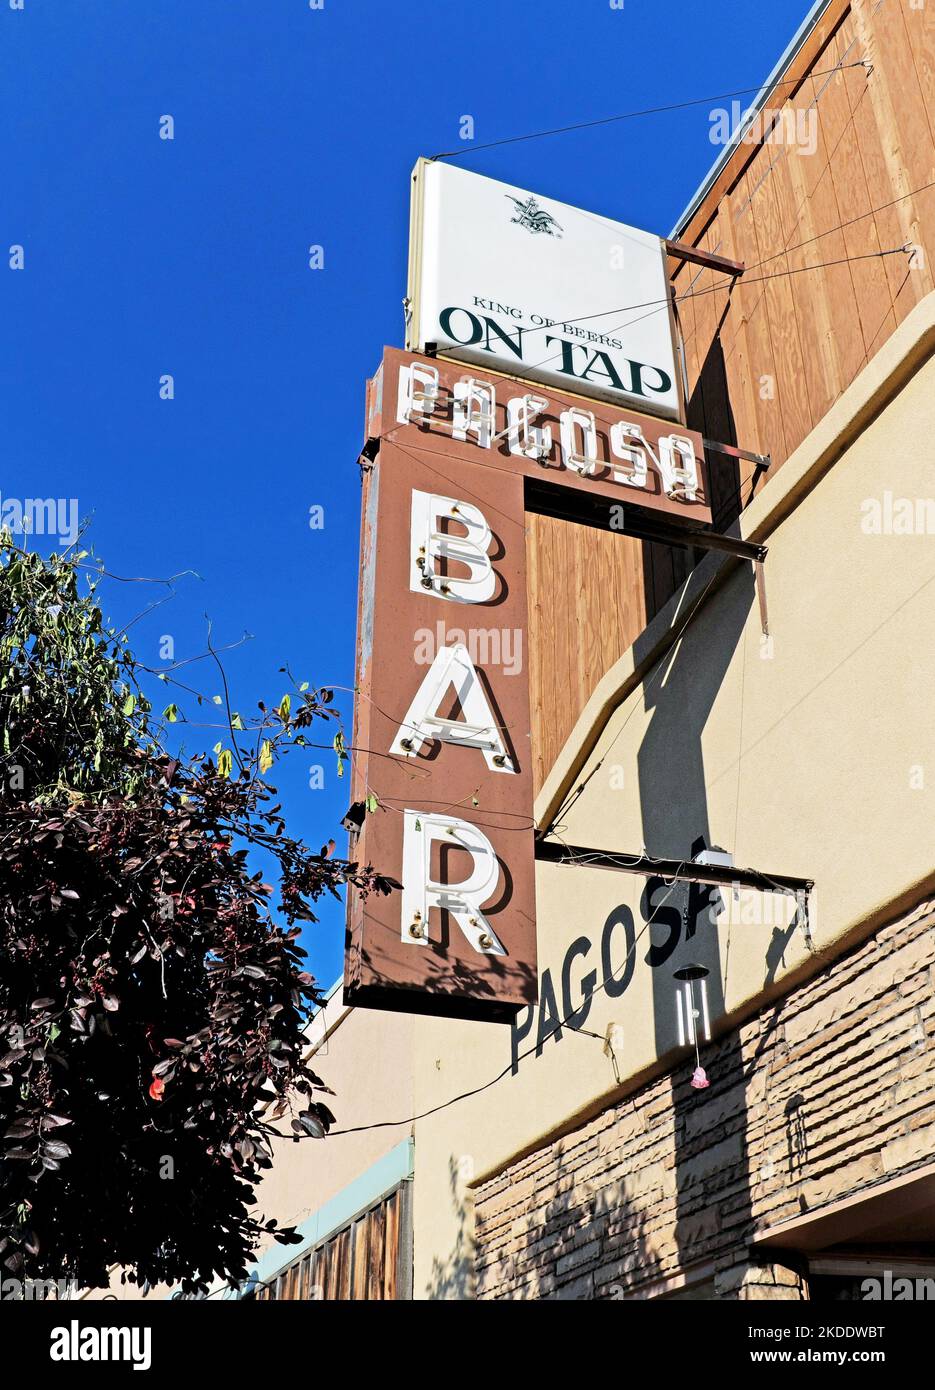 Le bar Pagosa, situé dans la rue principale du centre-ville de Pagosa Springs, Colorado, est un ancien bar de l'ouest de l'école avec un panneau de marquise de l'ancienne école à l'extérieur Banque D'Images